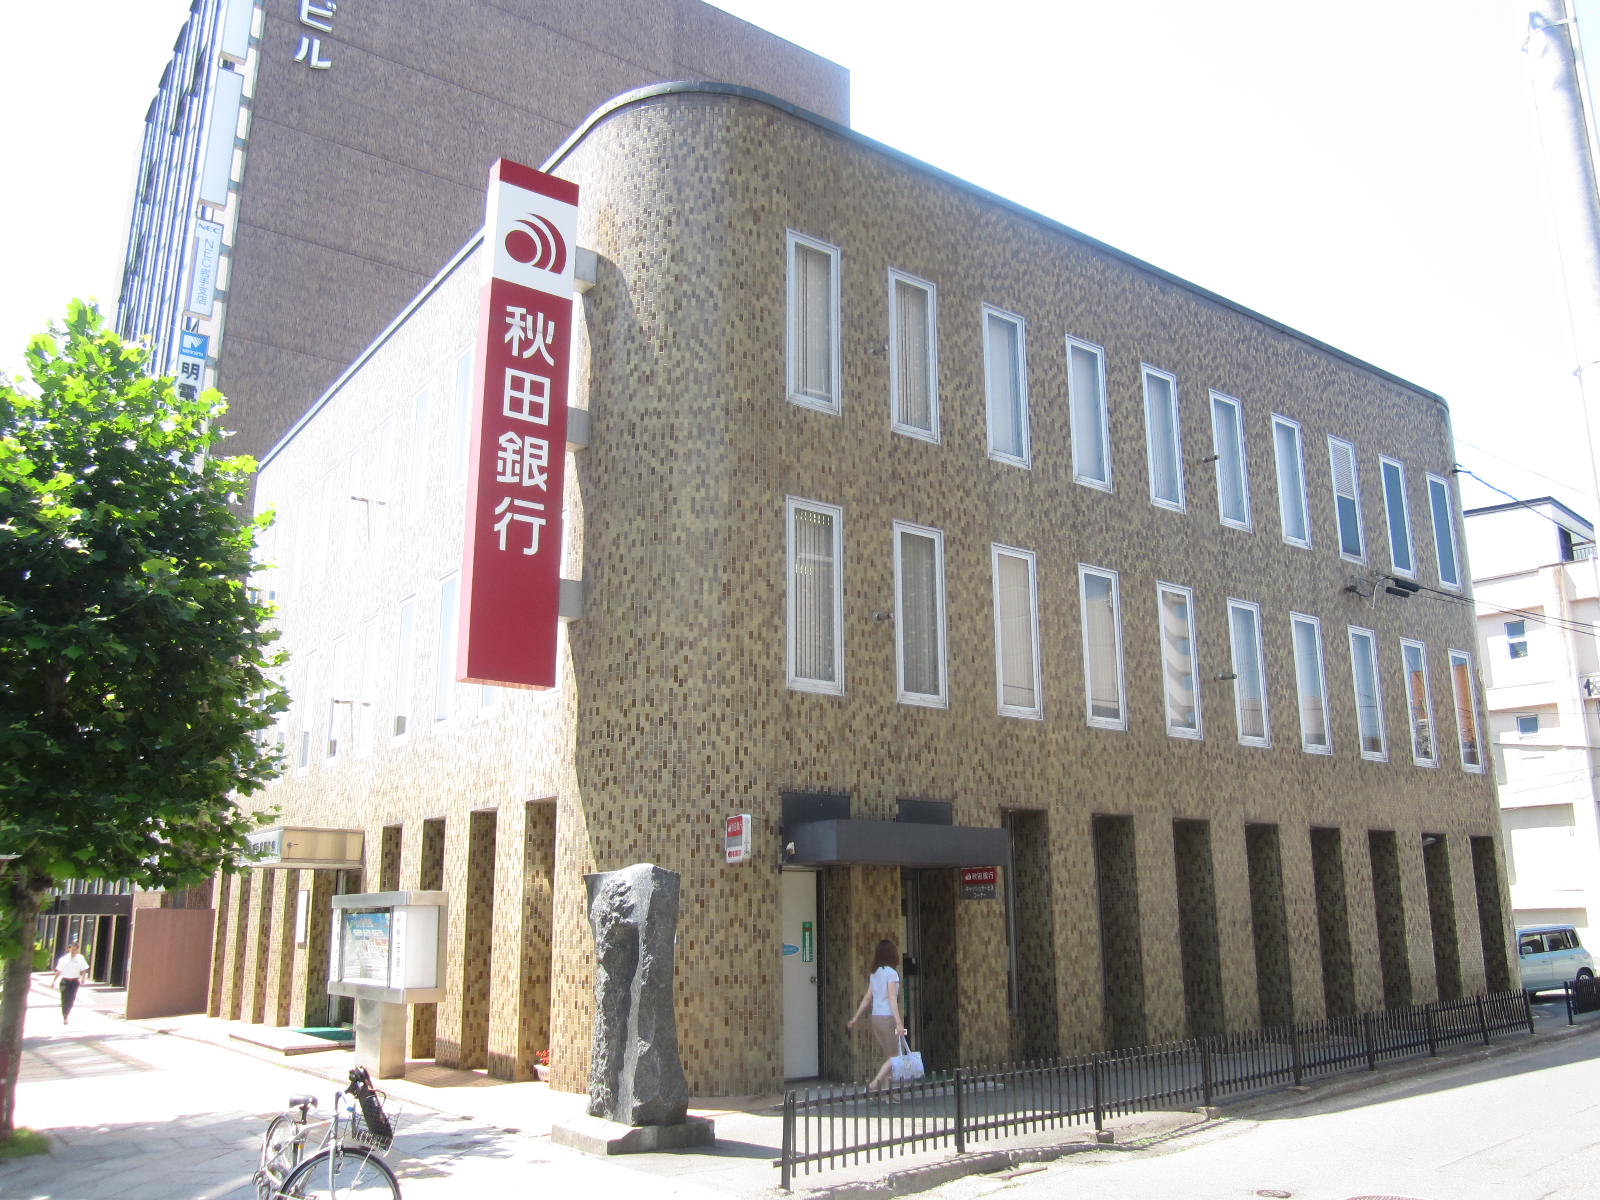 Bank. 175m to Akita Bank Morioka branch (Bank)